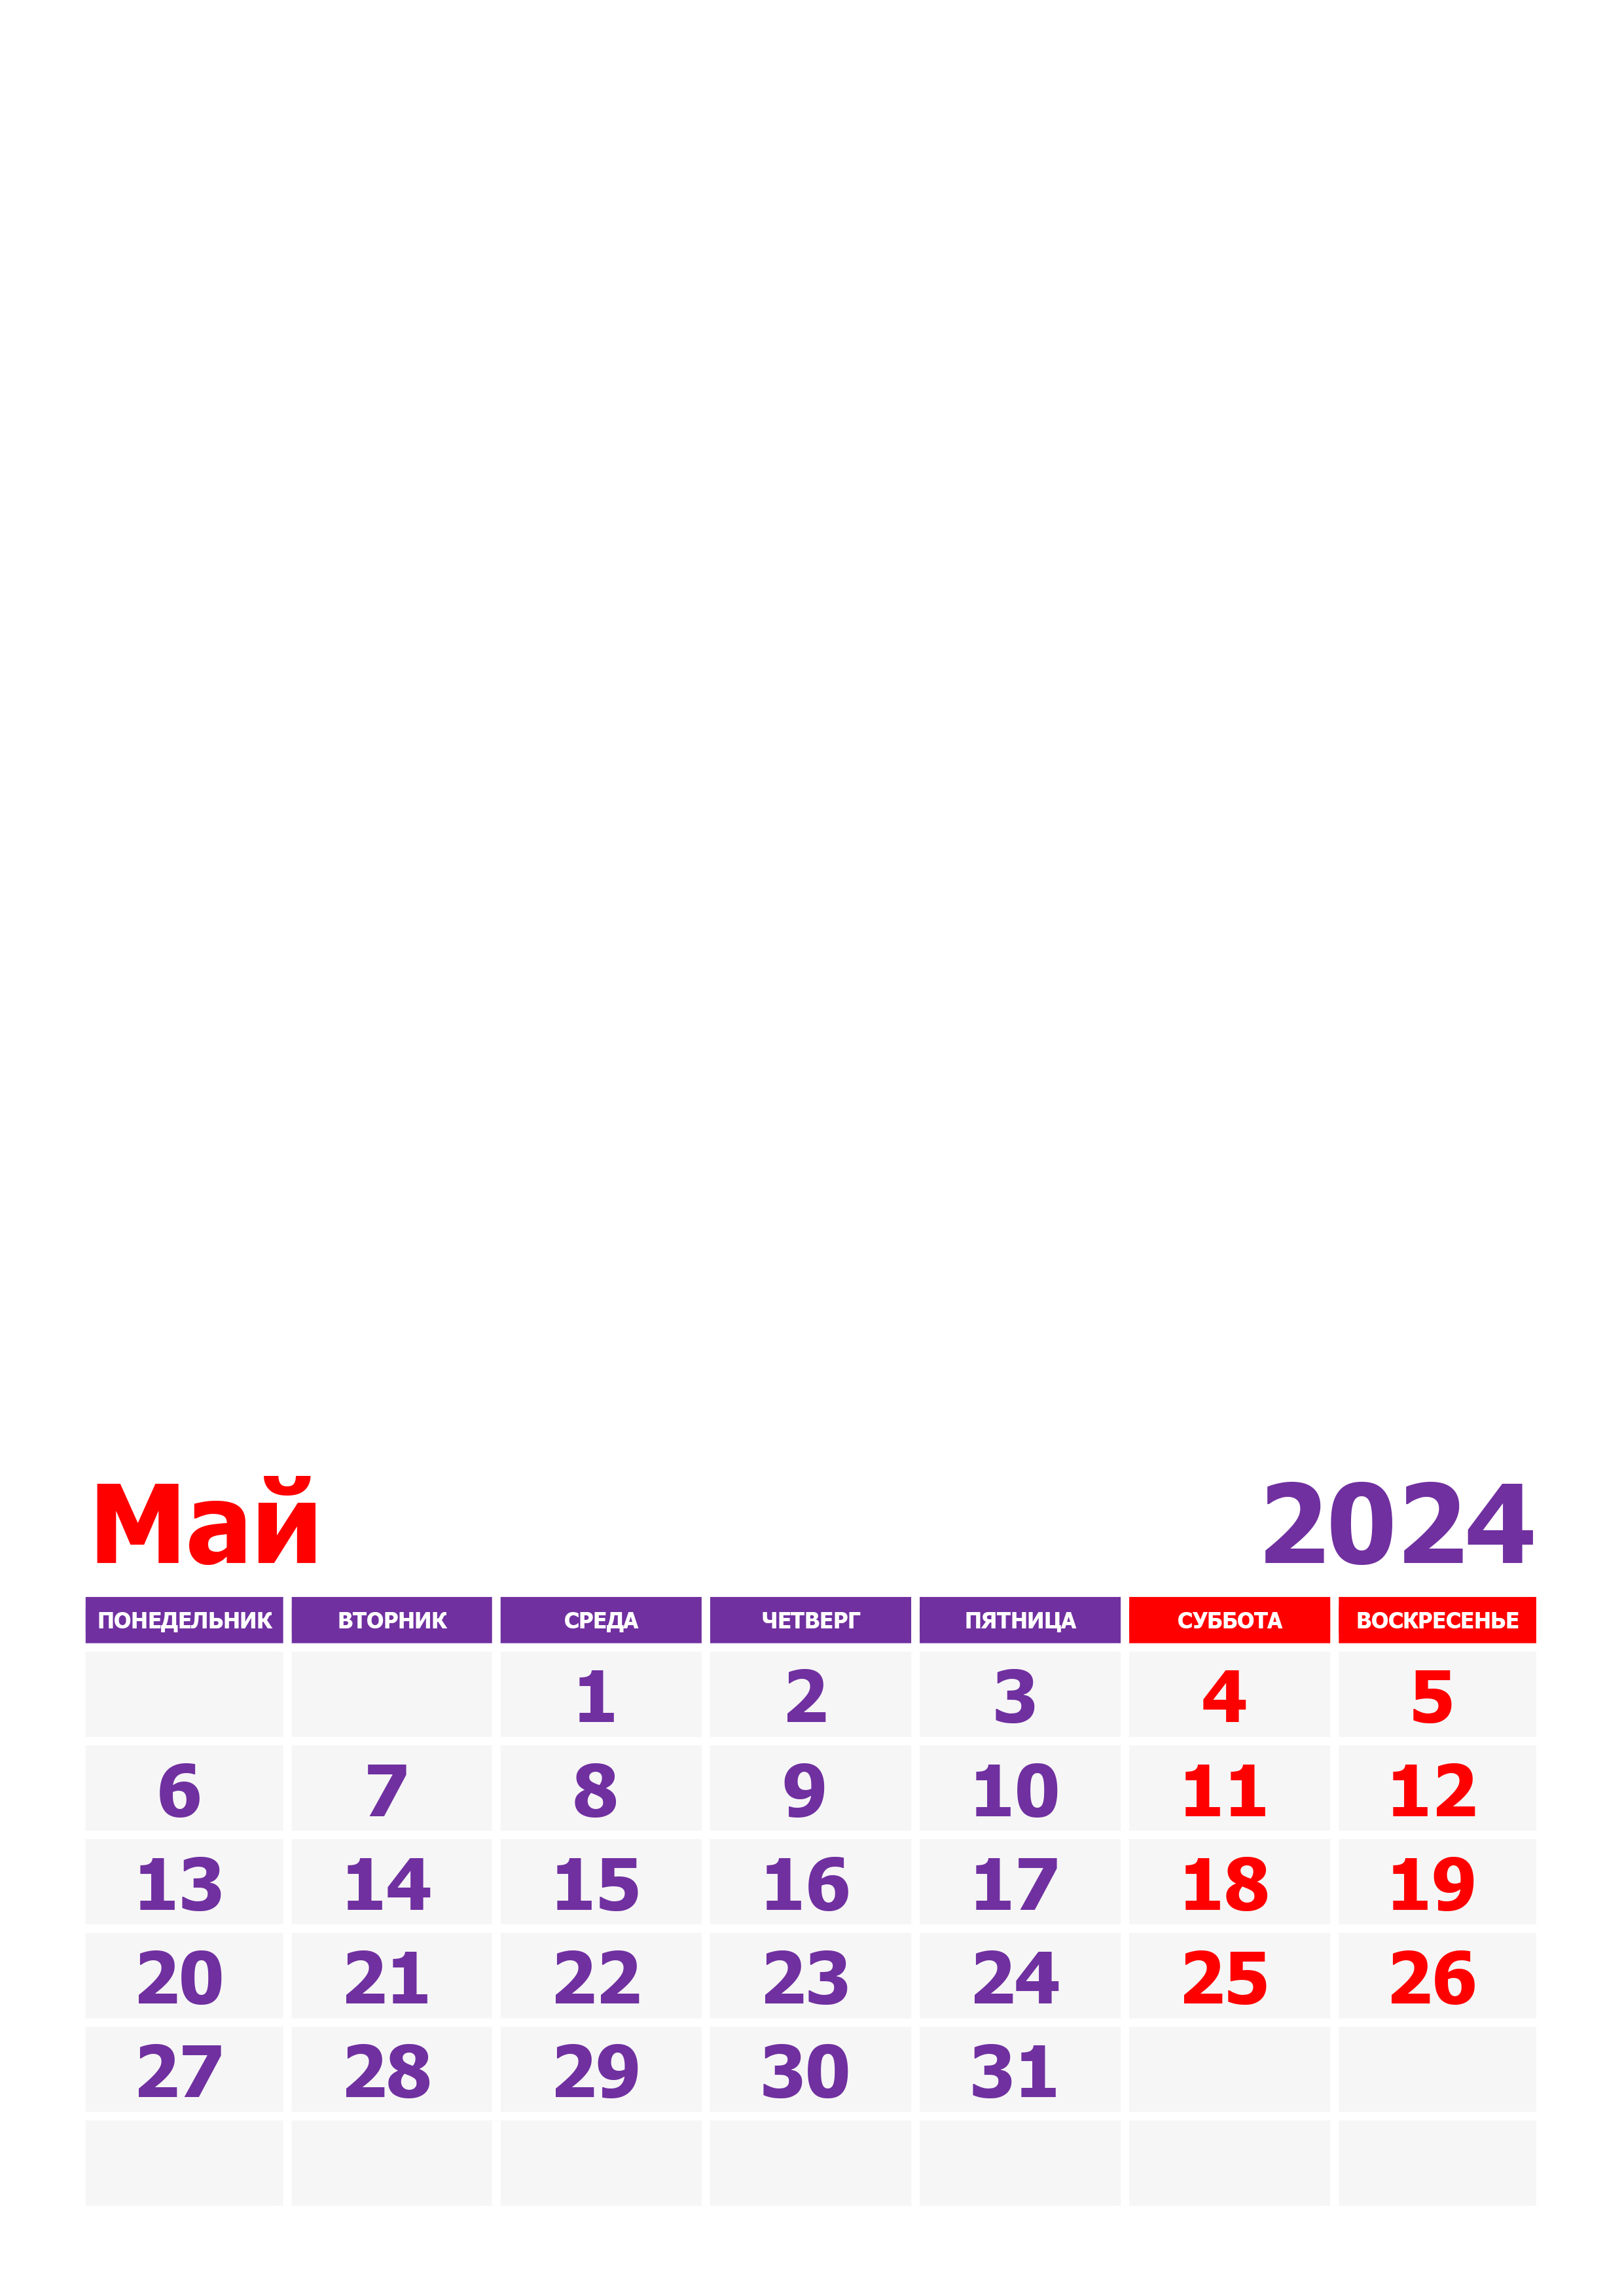 Сколько дней осталось до 26 мая 2024г. Календарььна май2024. Май 2024. Vrfktylfhm YF VF 2024. Май 2024 календ.